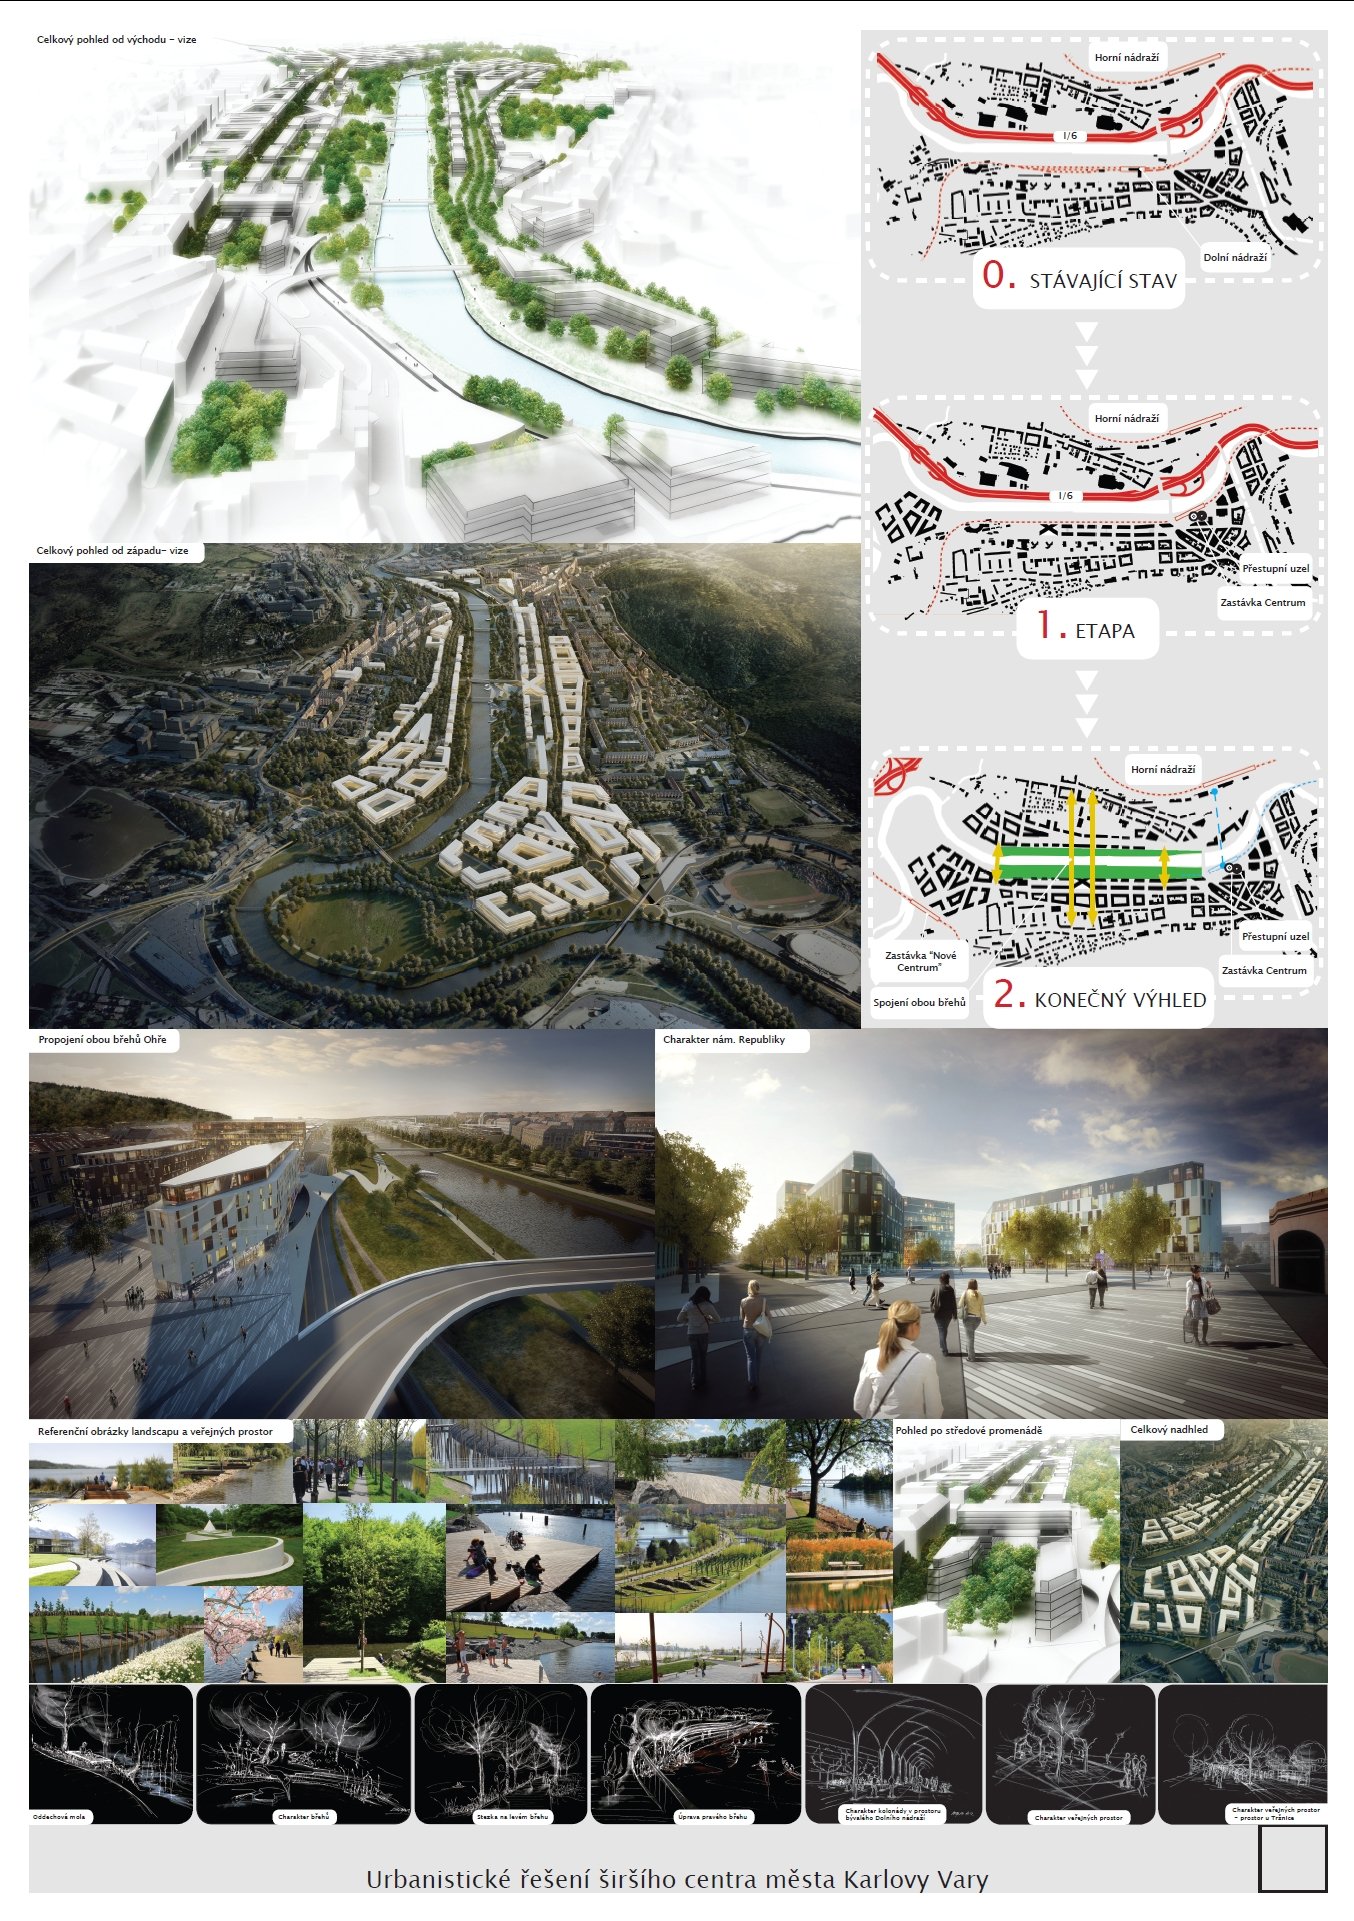 Urbanistické řešení širšího centra města Karlovy Vary